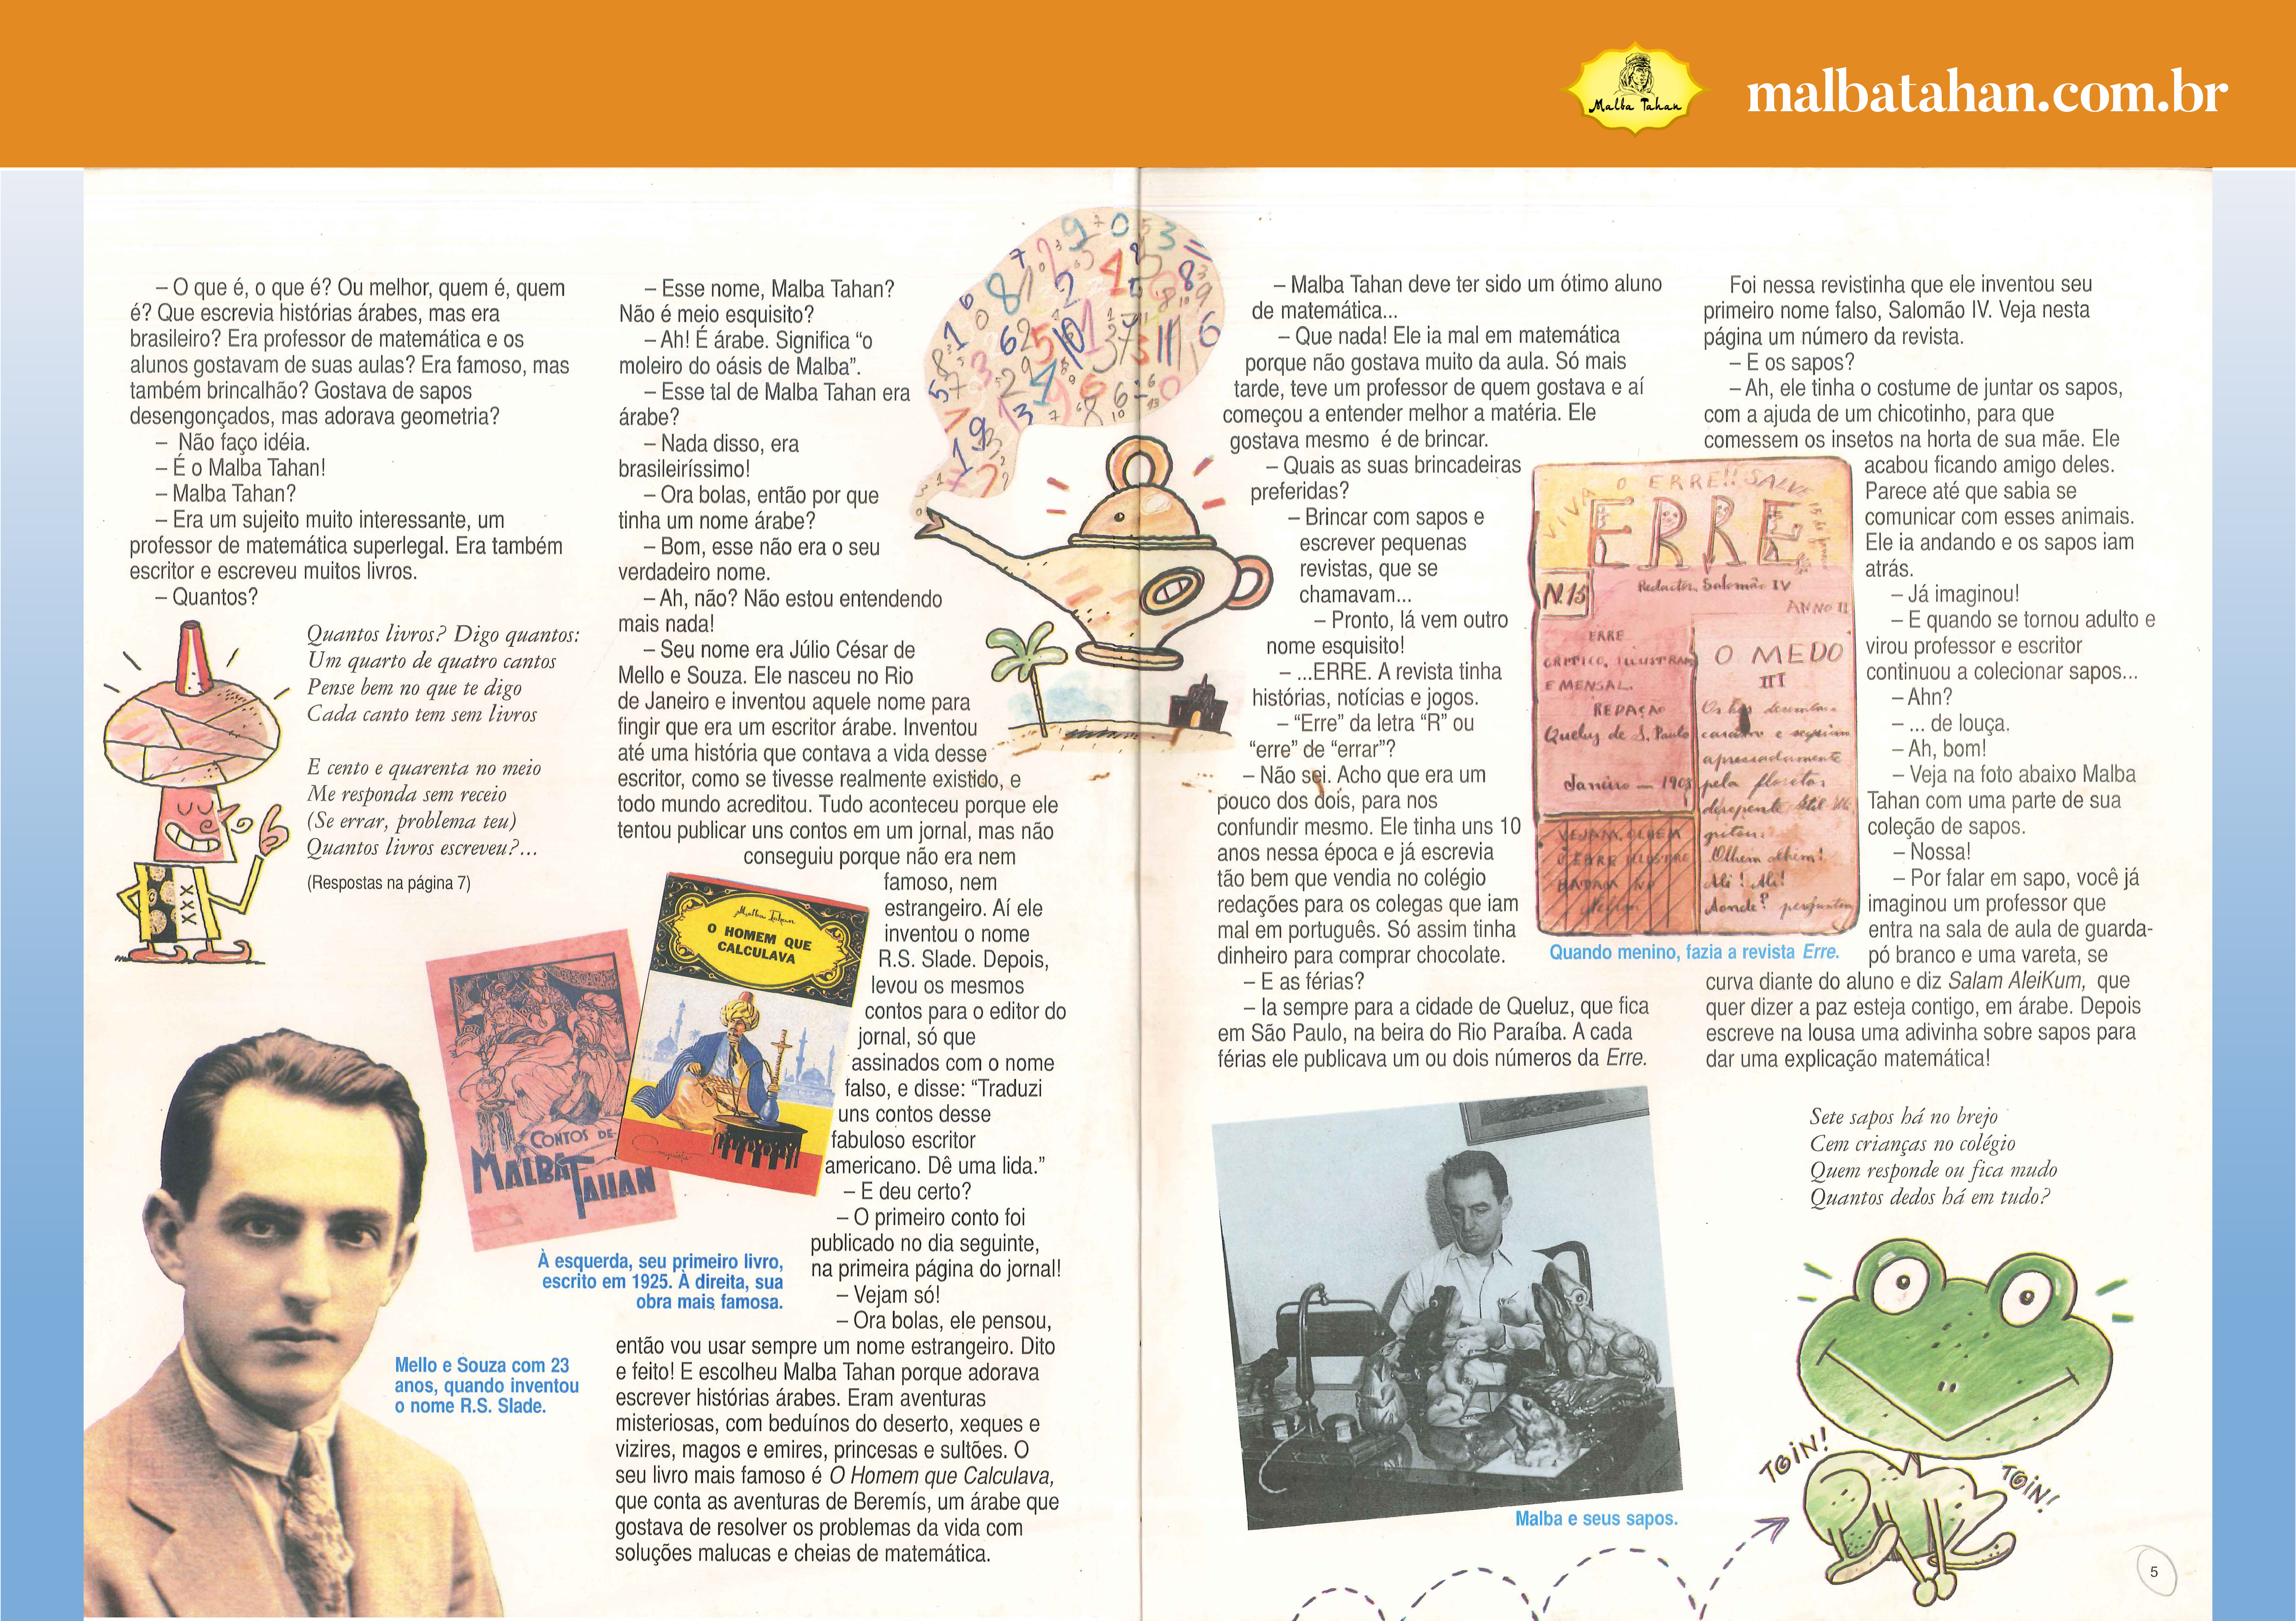 O Homem que Calculava: Uma biografia lúdica ilustrada por Pedro Paulo  Salles - Malba Tahan